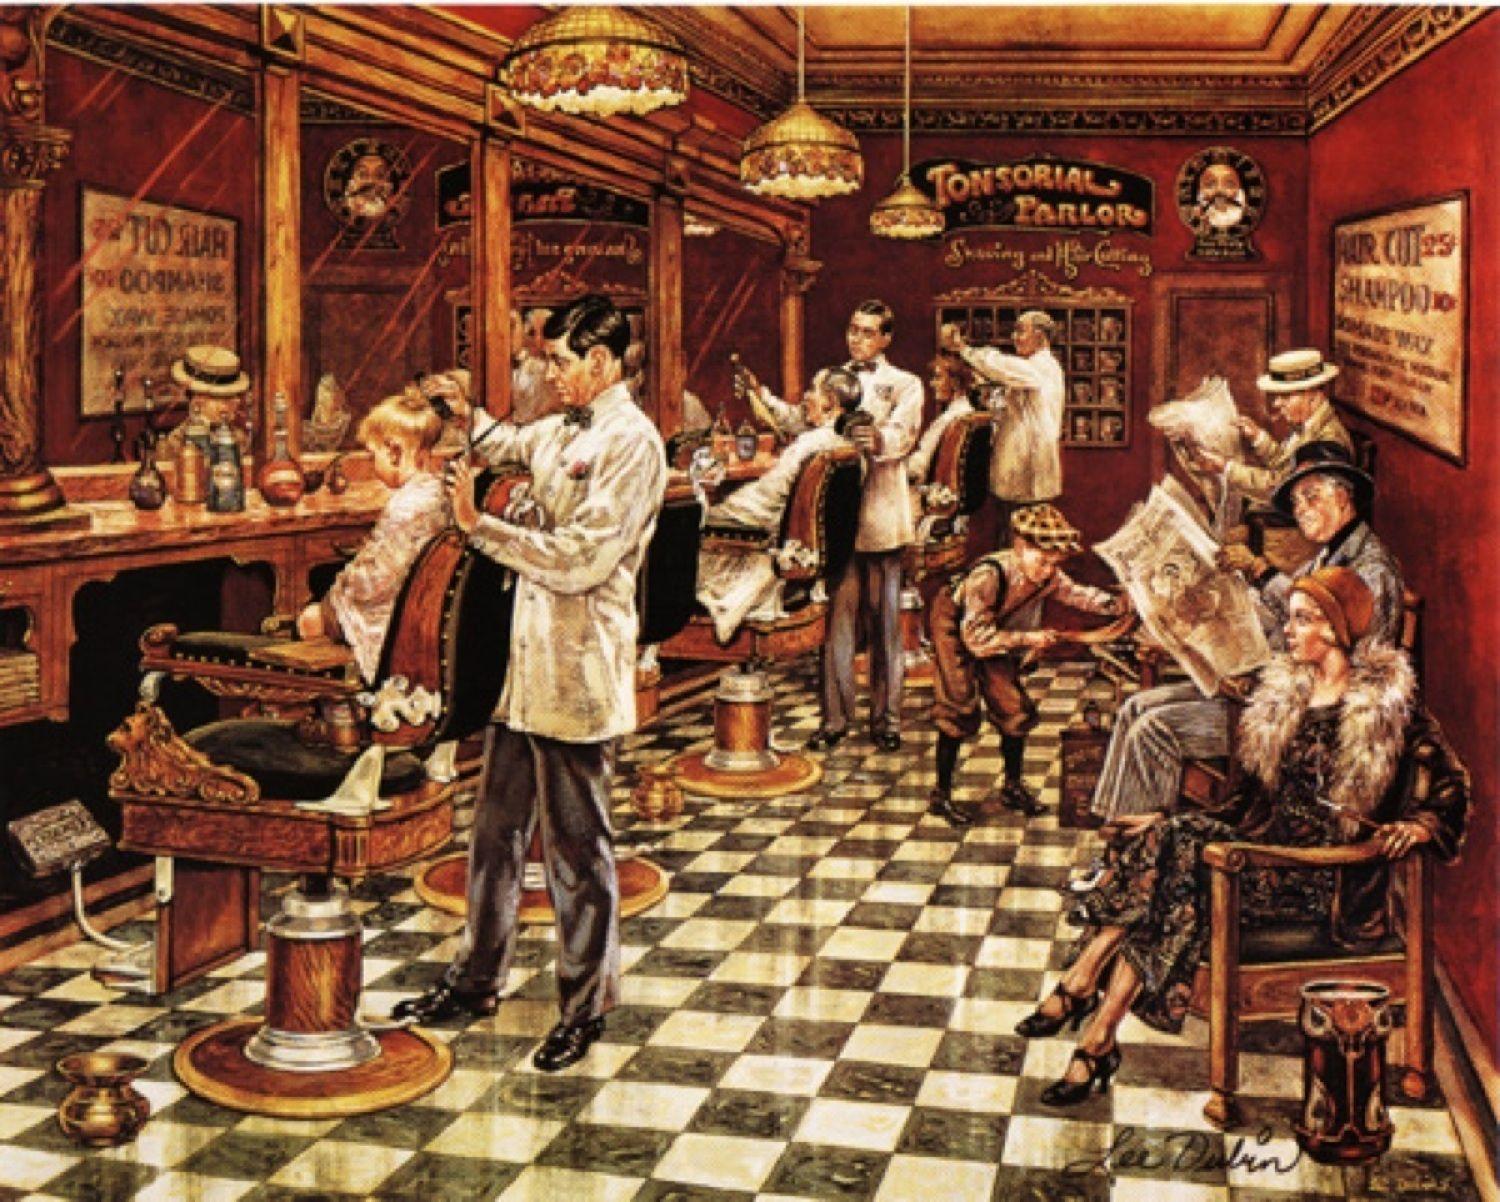 Barbershop Wallpapers Group